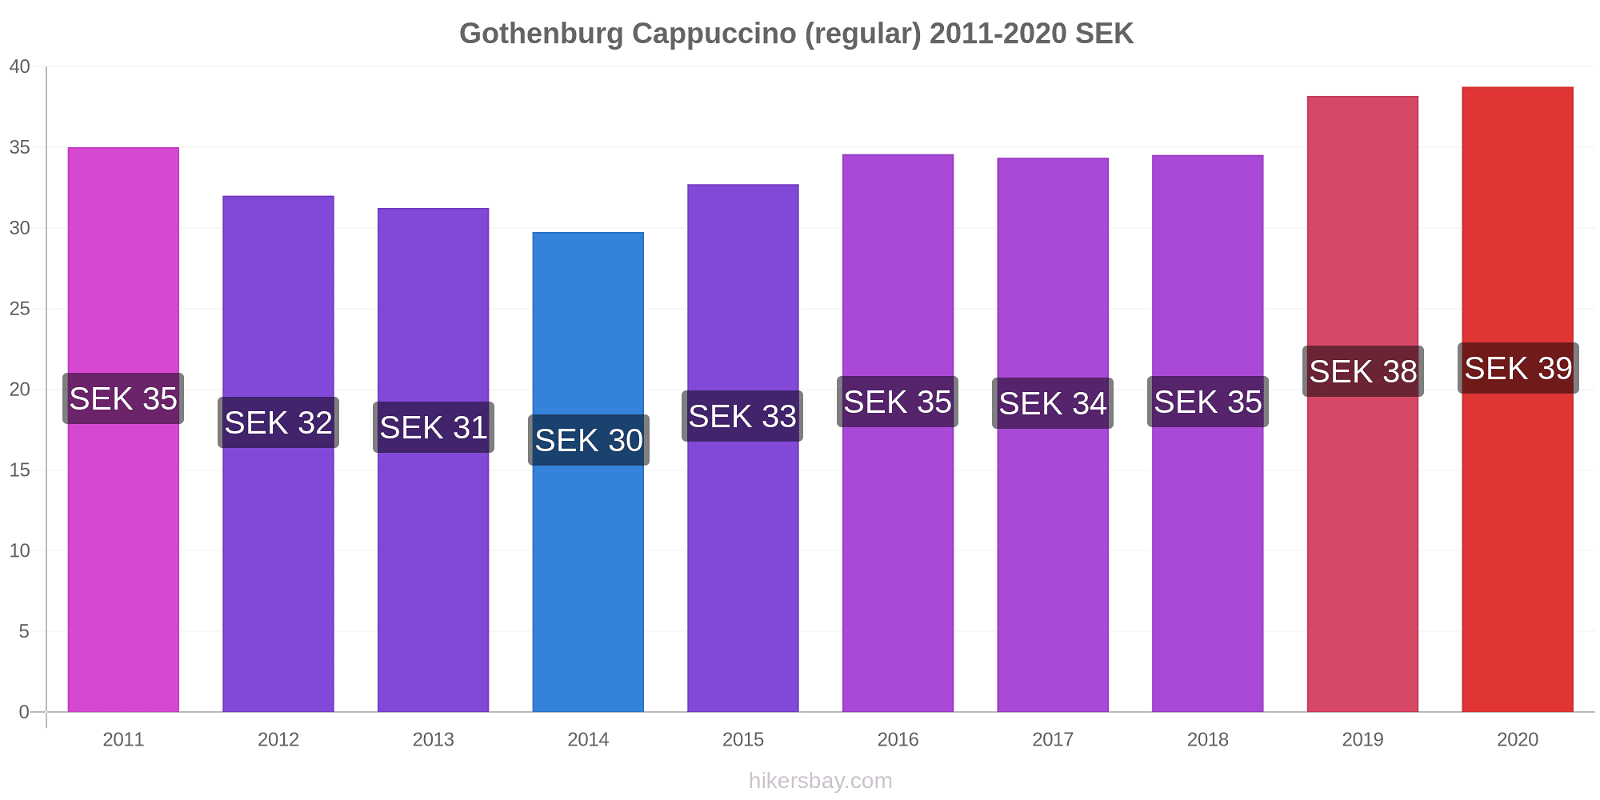 Gothenburg price changes Cappuccino (regular) hikersbay.com